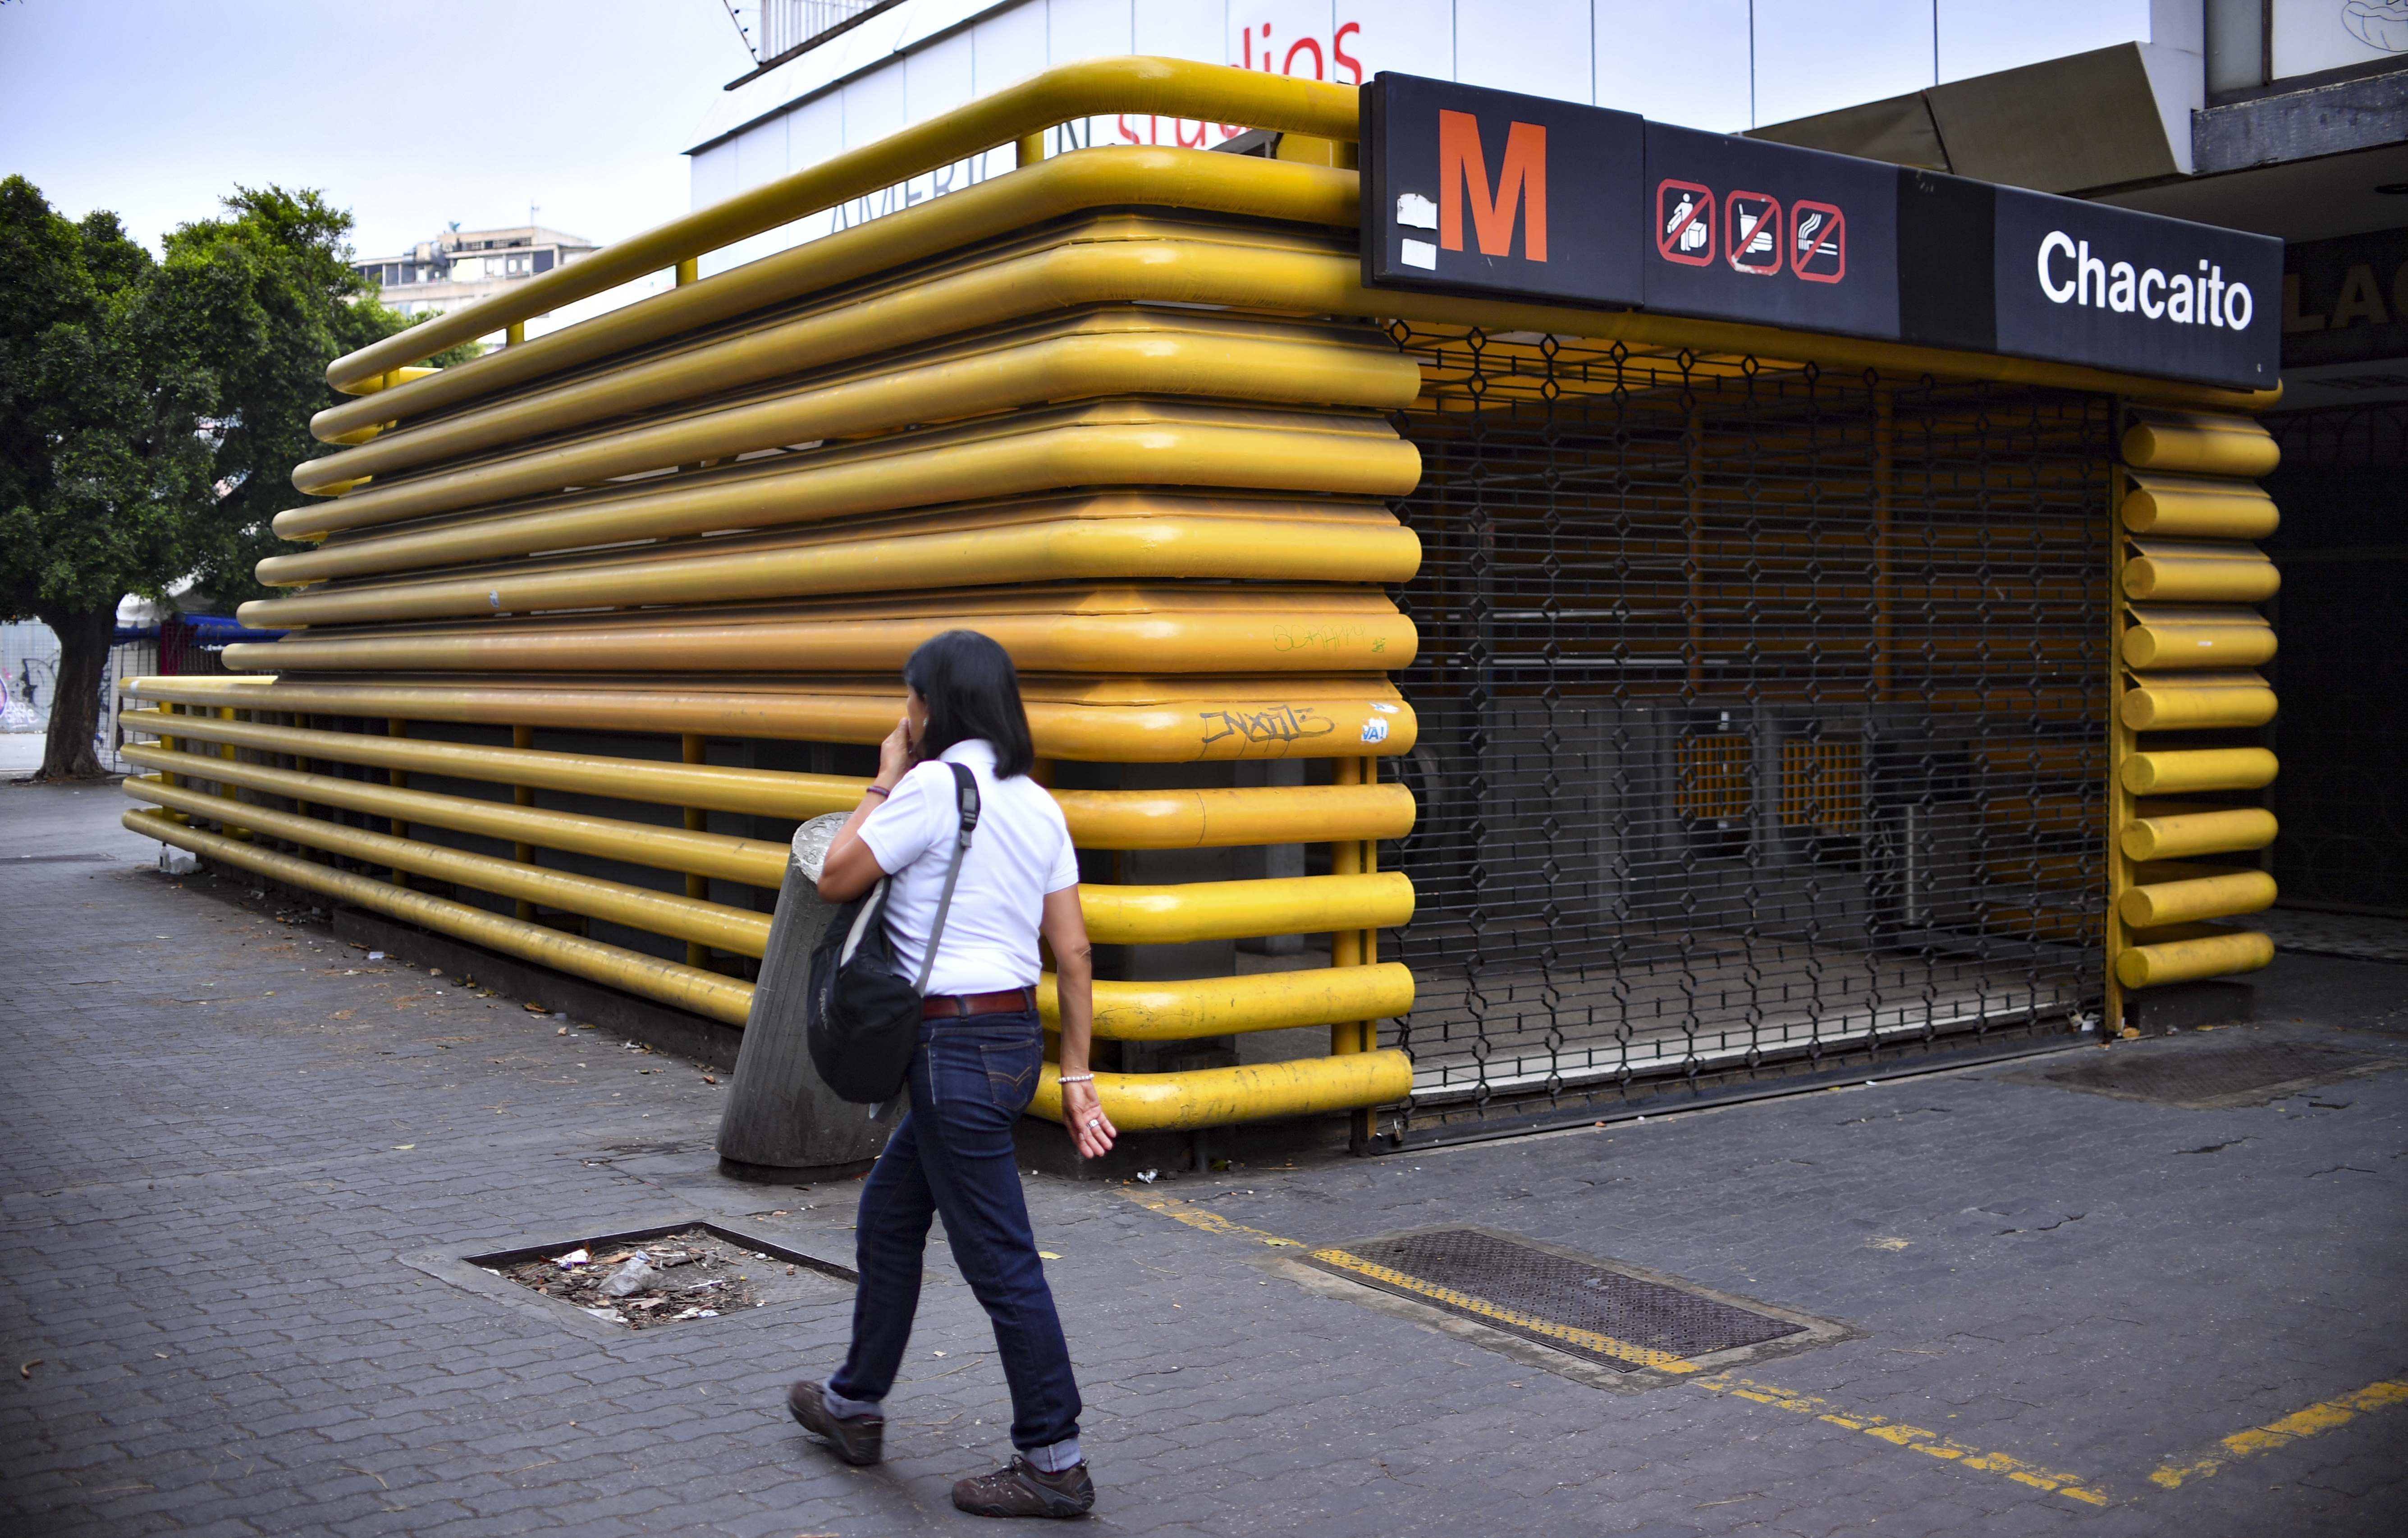 Cerraron estaciones del Metro de Caracas tras severas fallas de electricidad #2Ago